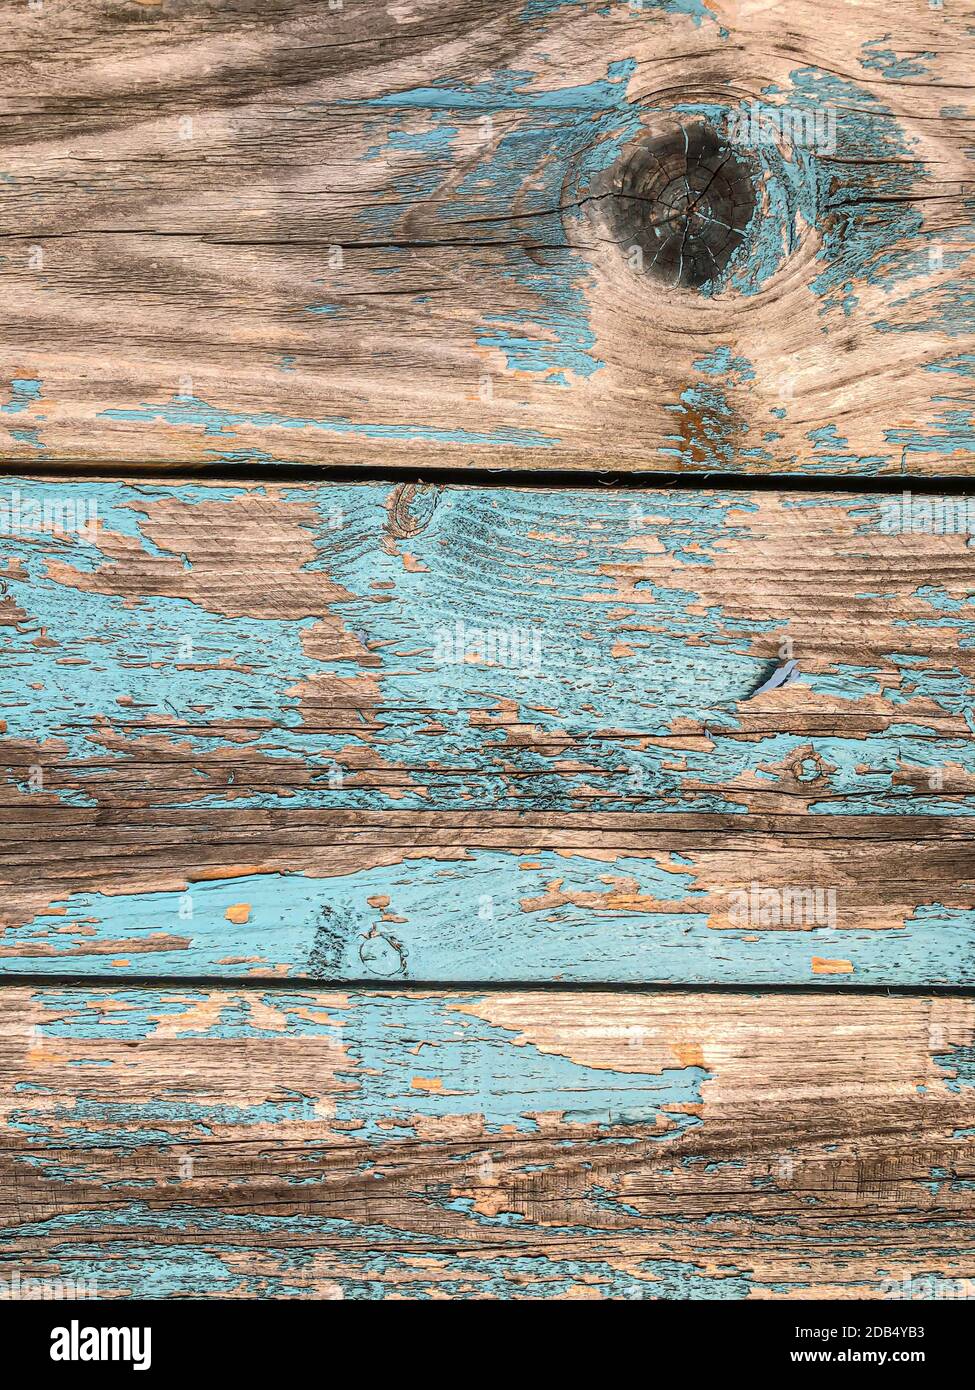 Nền gỗ tự nhiên đã lão hoá với màu xanh da trời và nâu đầy uyển chuyển sẽ tạo ra một ý tưởng thú vị cho thiết kế nhà của bạn. Khám phá hình ảnh này để cảm nhận được sự ấn tượng của nó và khám phá sự đẹp độc đáo mà màu sắc và sự lão hoá mang lại.